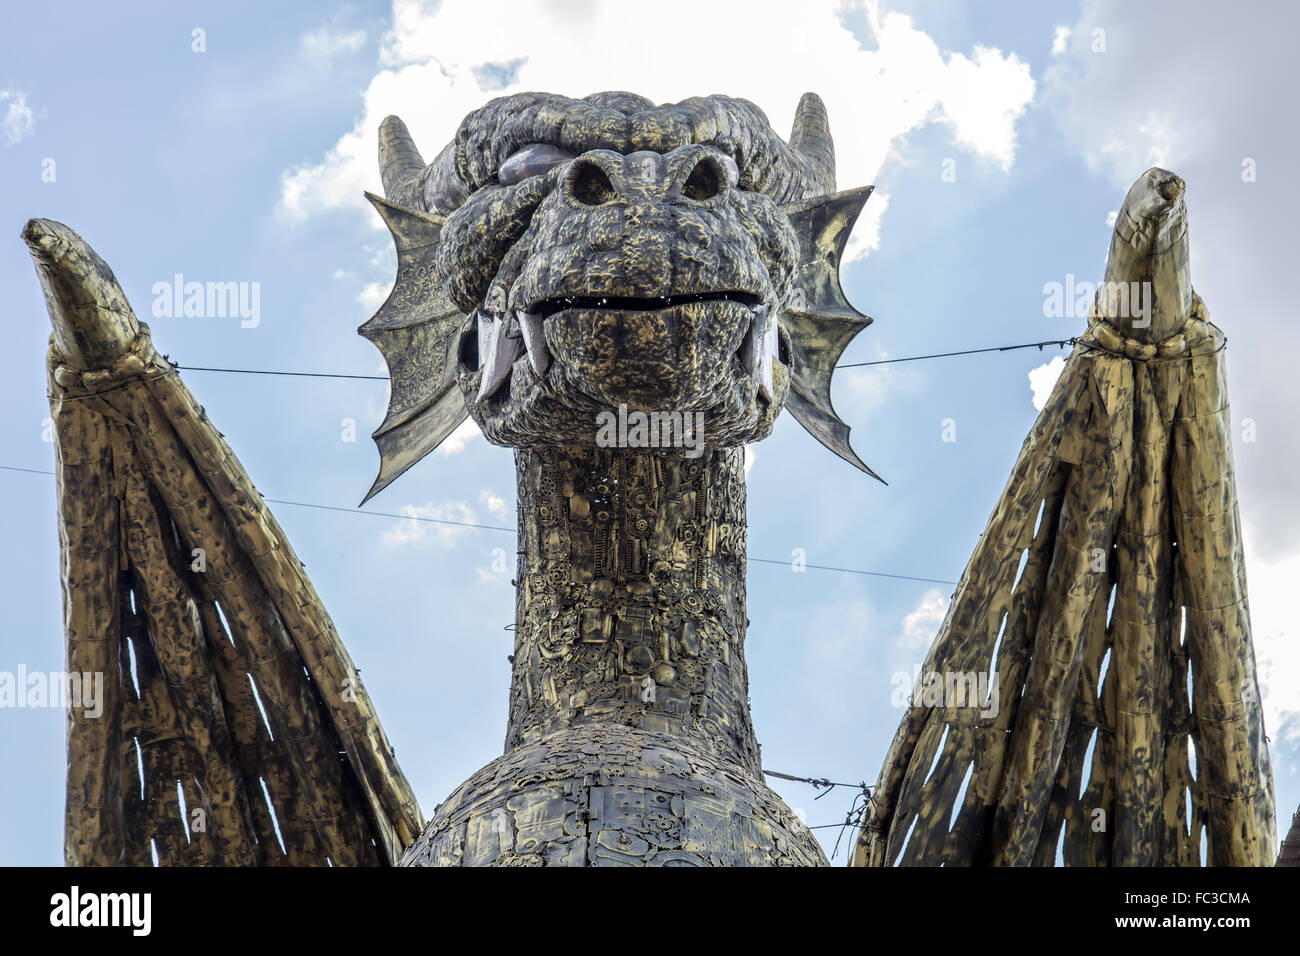 Metall-Statue des Drachens auf Hintergrund des blauen Himmels Stockfoto